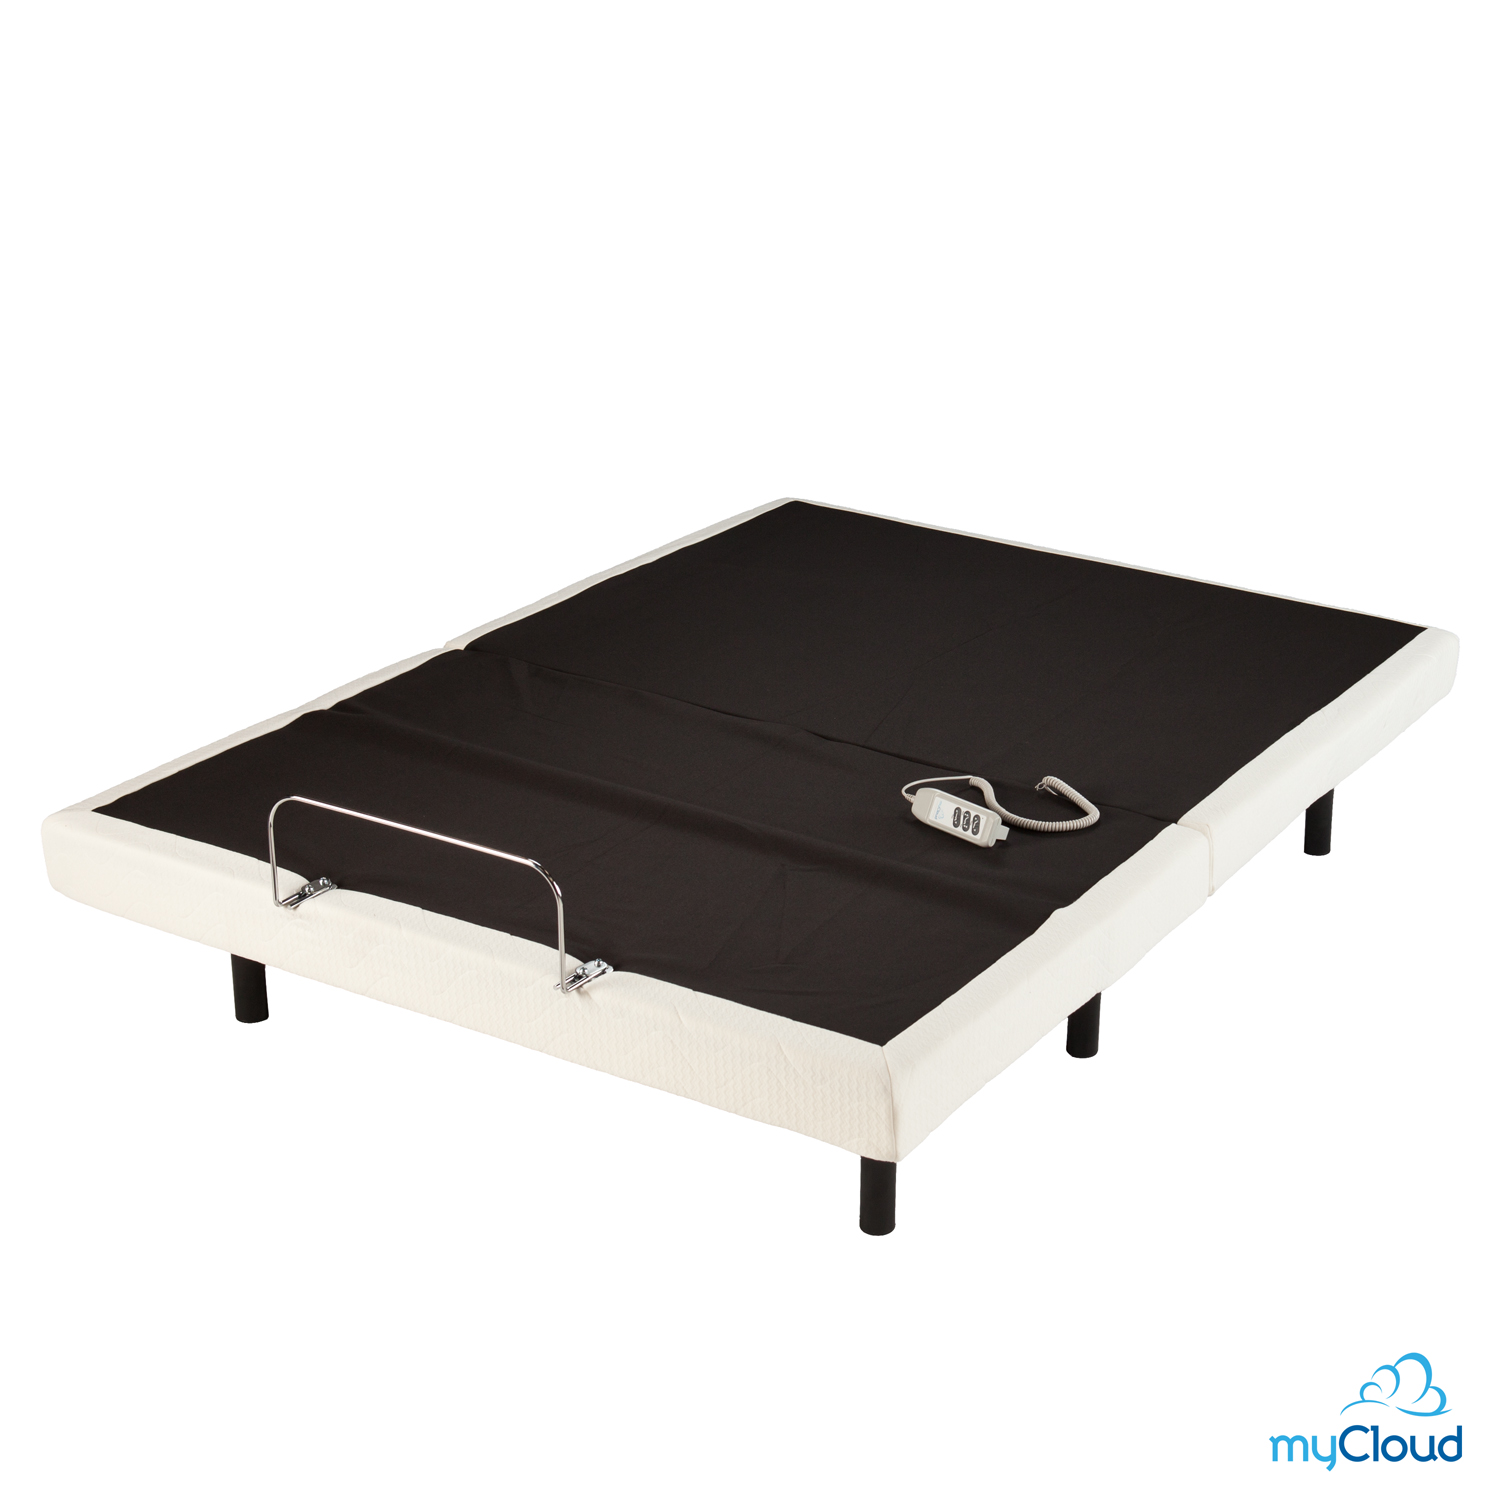 Furnituremaxx MyCloud Adjustable Bed Frame - Queen